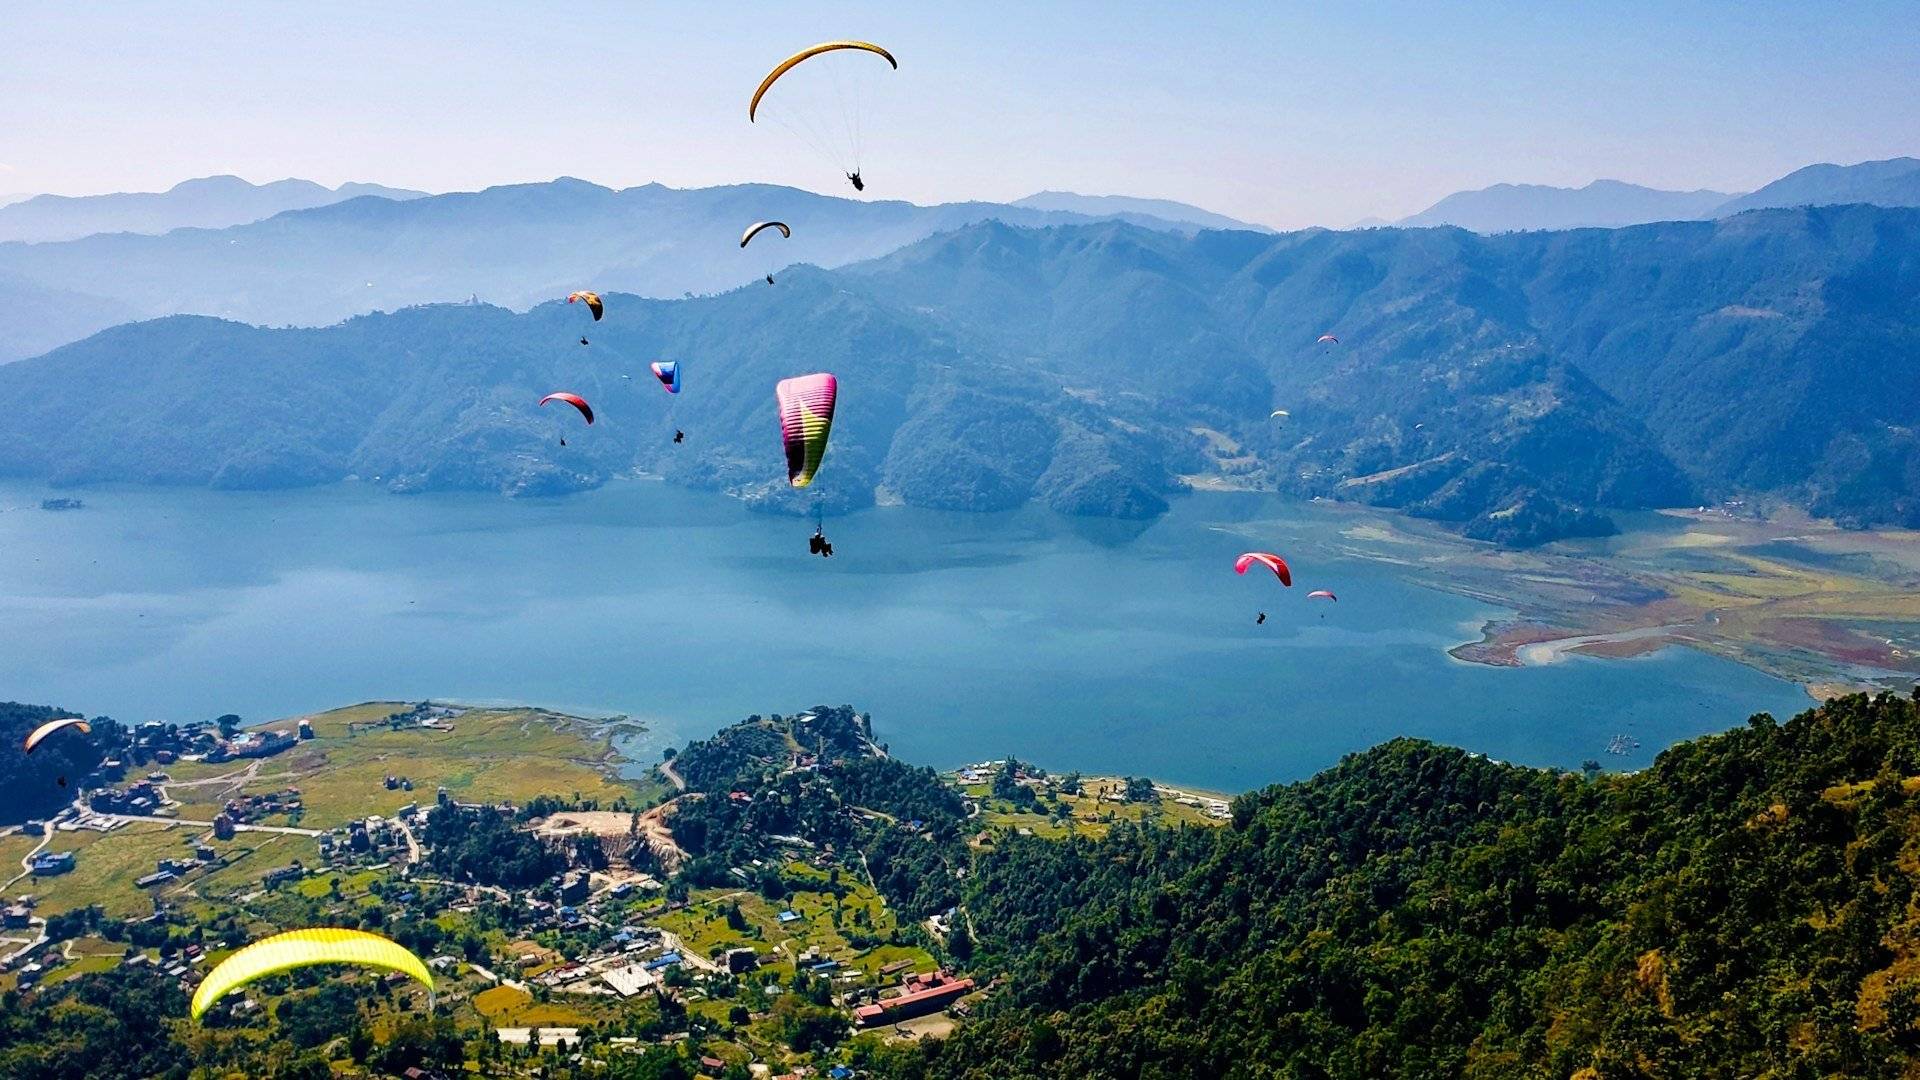 Vol vers Pokhara et croisière sur le lac Phewa